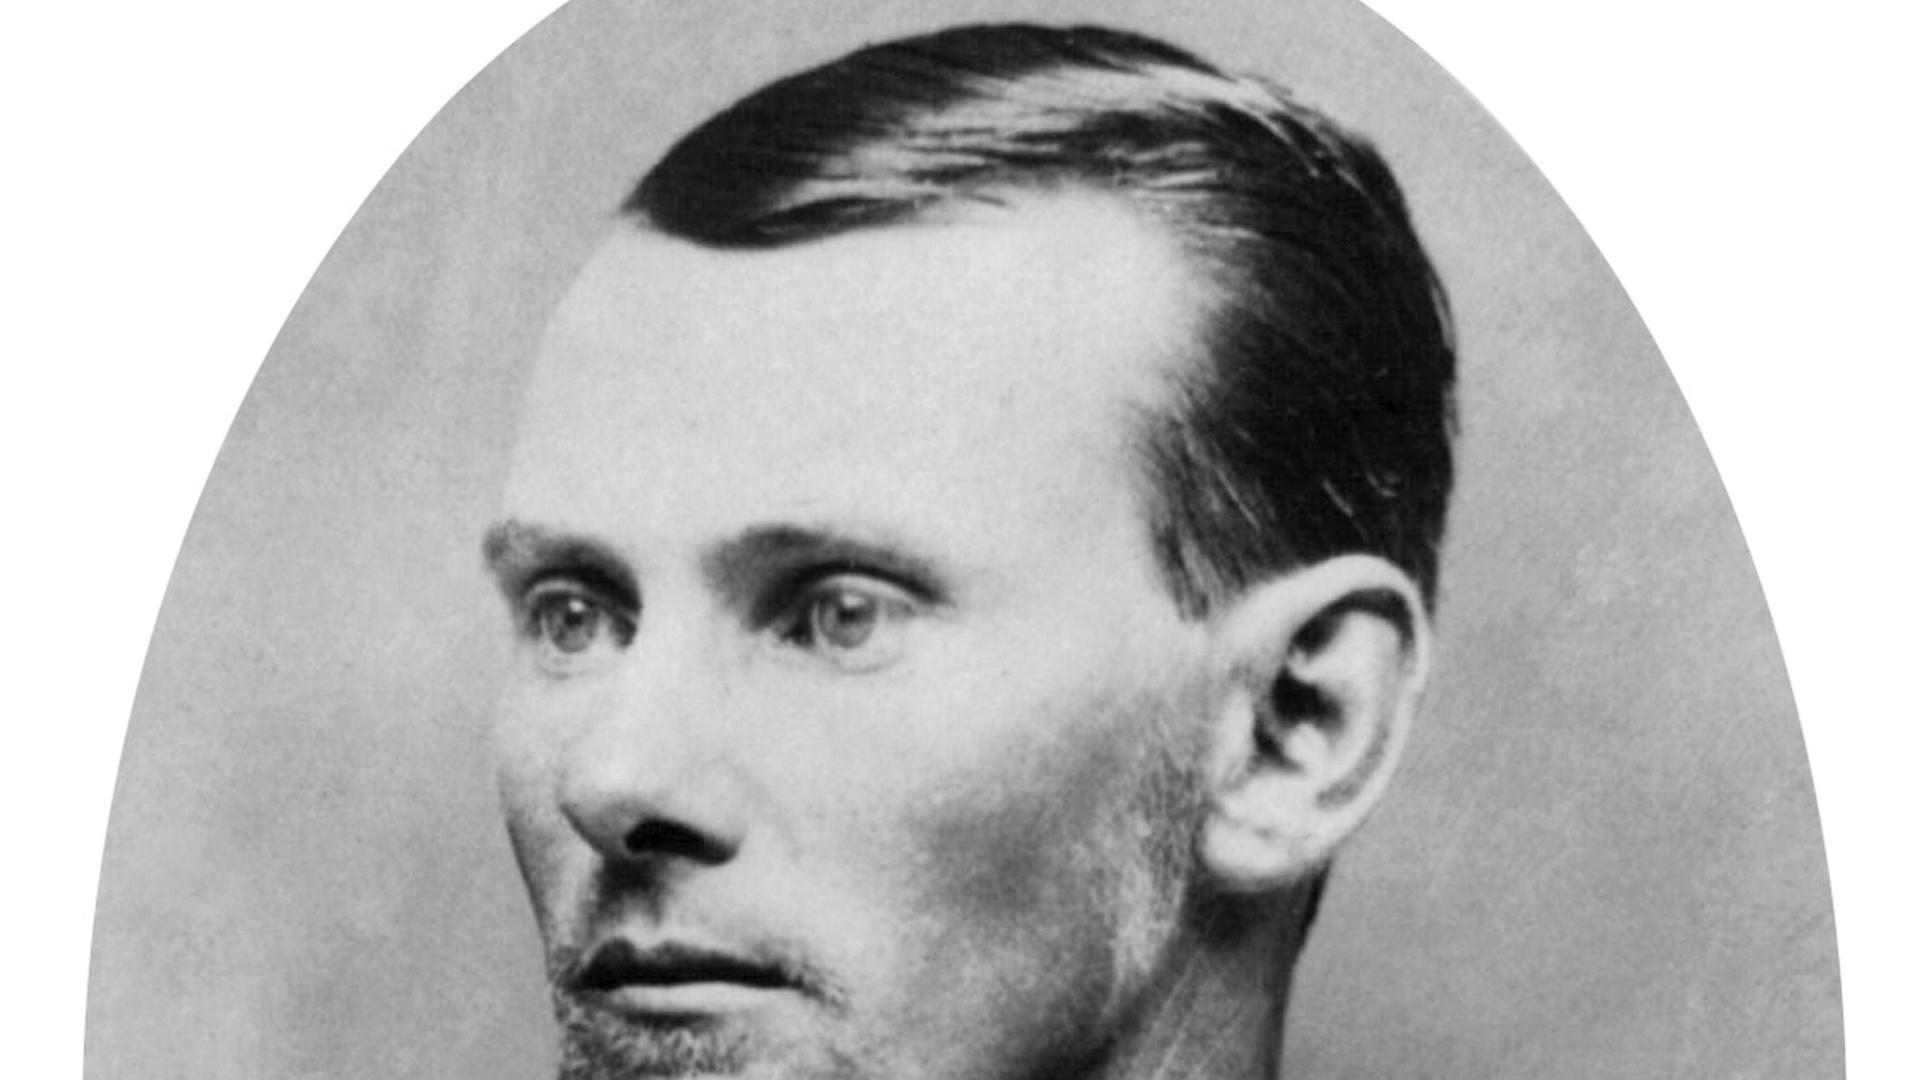 Das Schwarz-Weiß-Porträt-Foto zeigt einen Mann mit Querbinder und streng gescheiteltem Haar